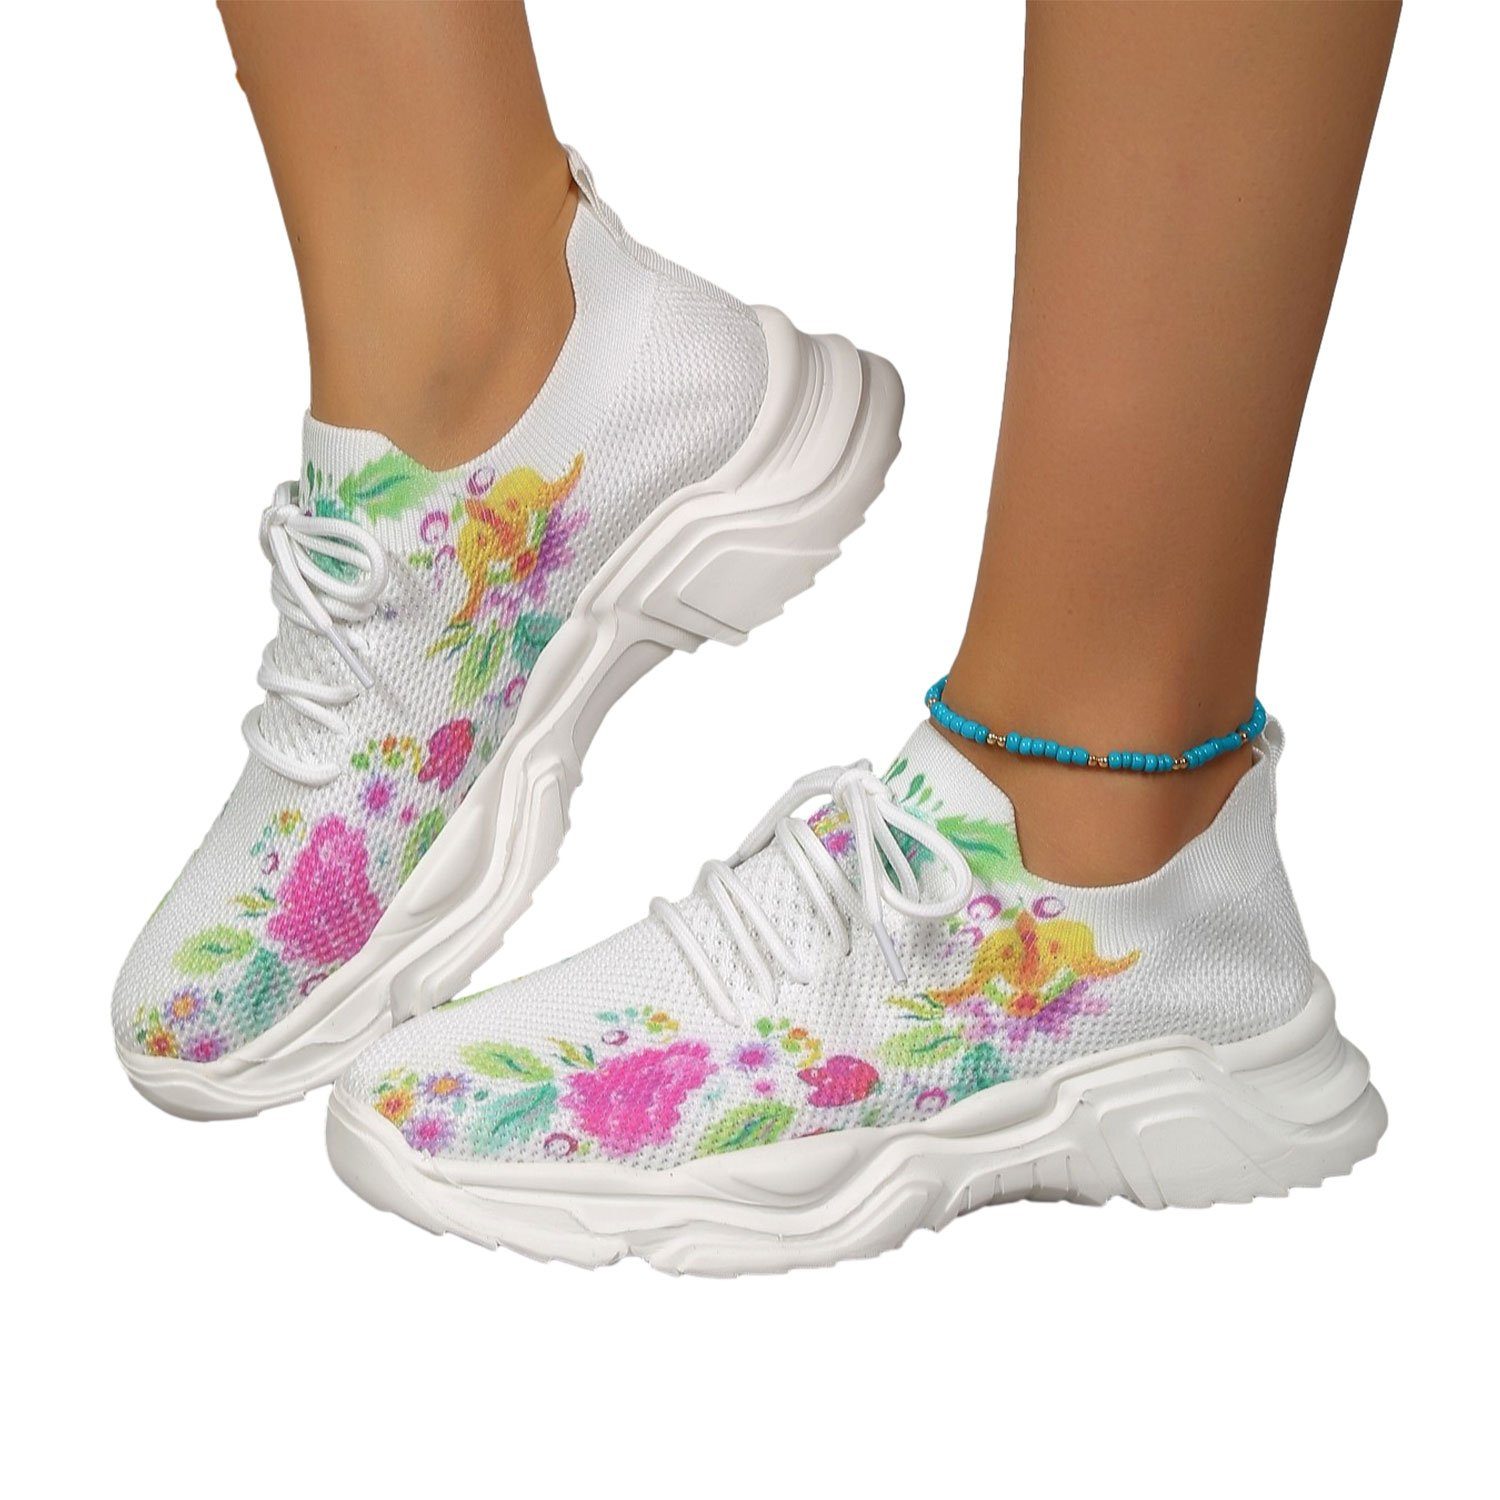 Daisred Damen Atmungsaktiv Turnschuhe Sneaker Fashion Sneaker Blumen2